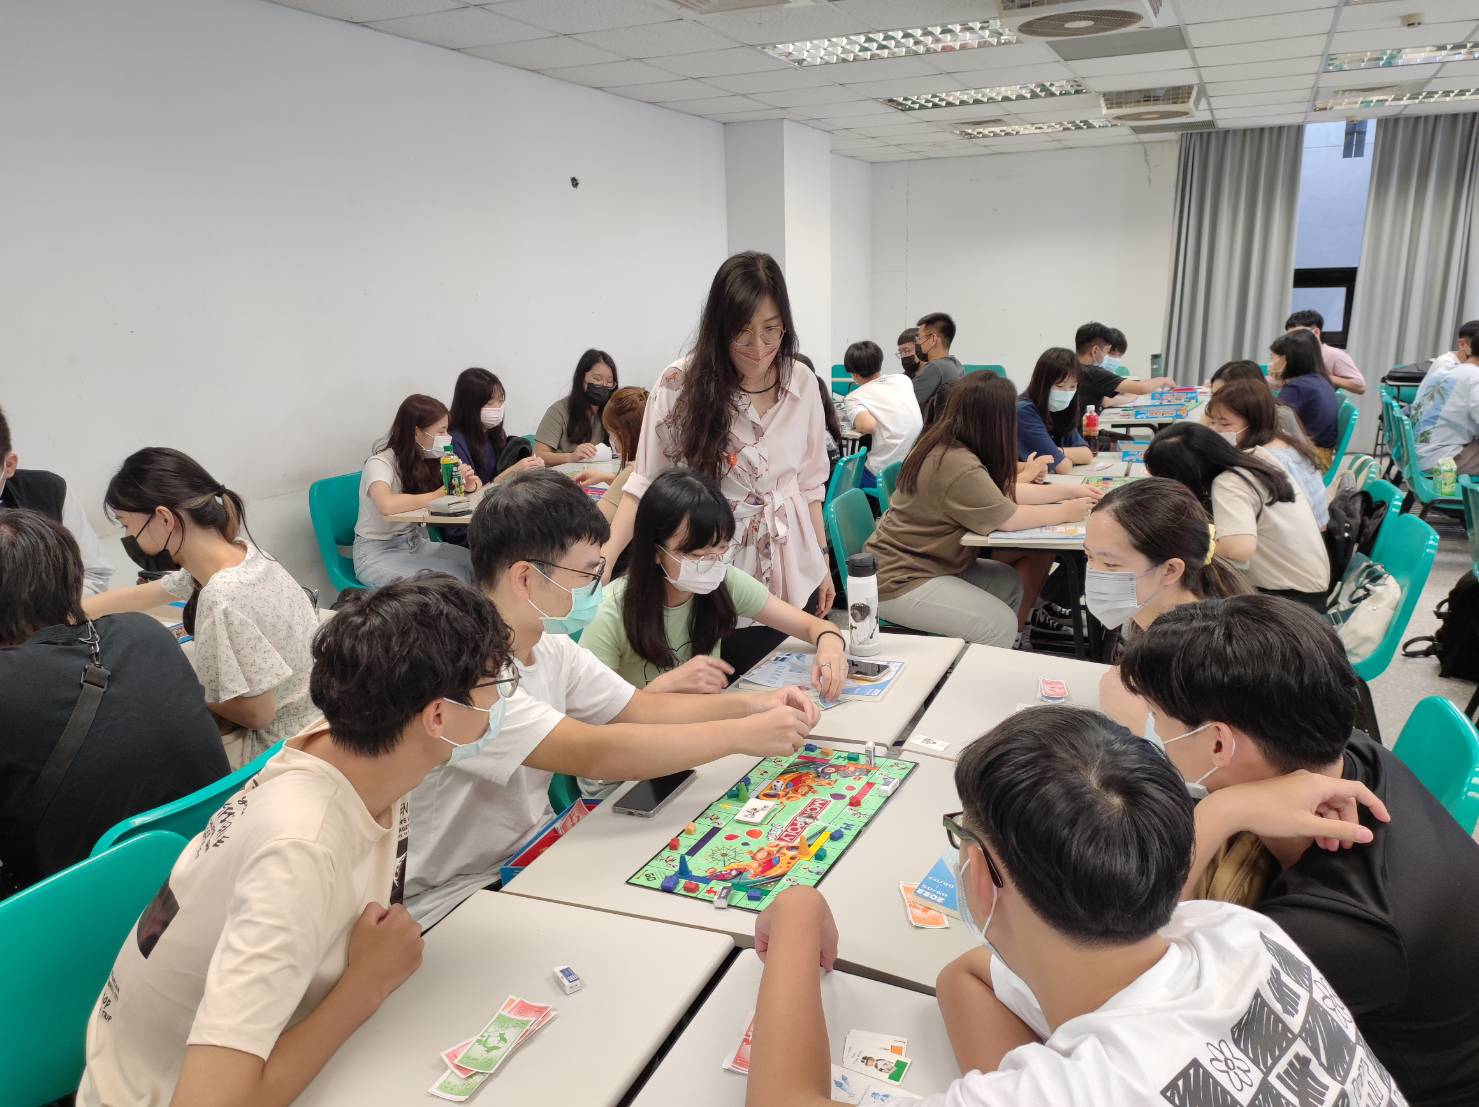 元智英語營安排桌遊課程讓同學以玩樂方式學英文